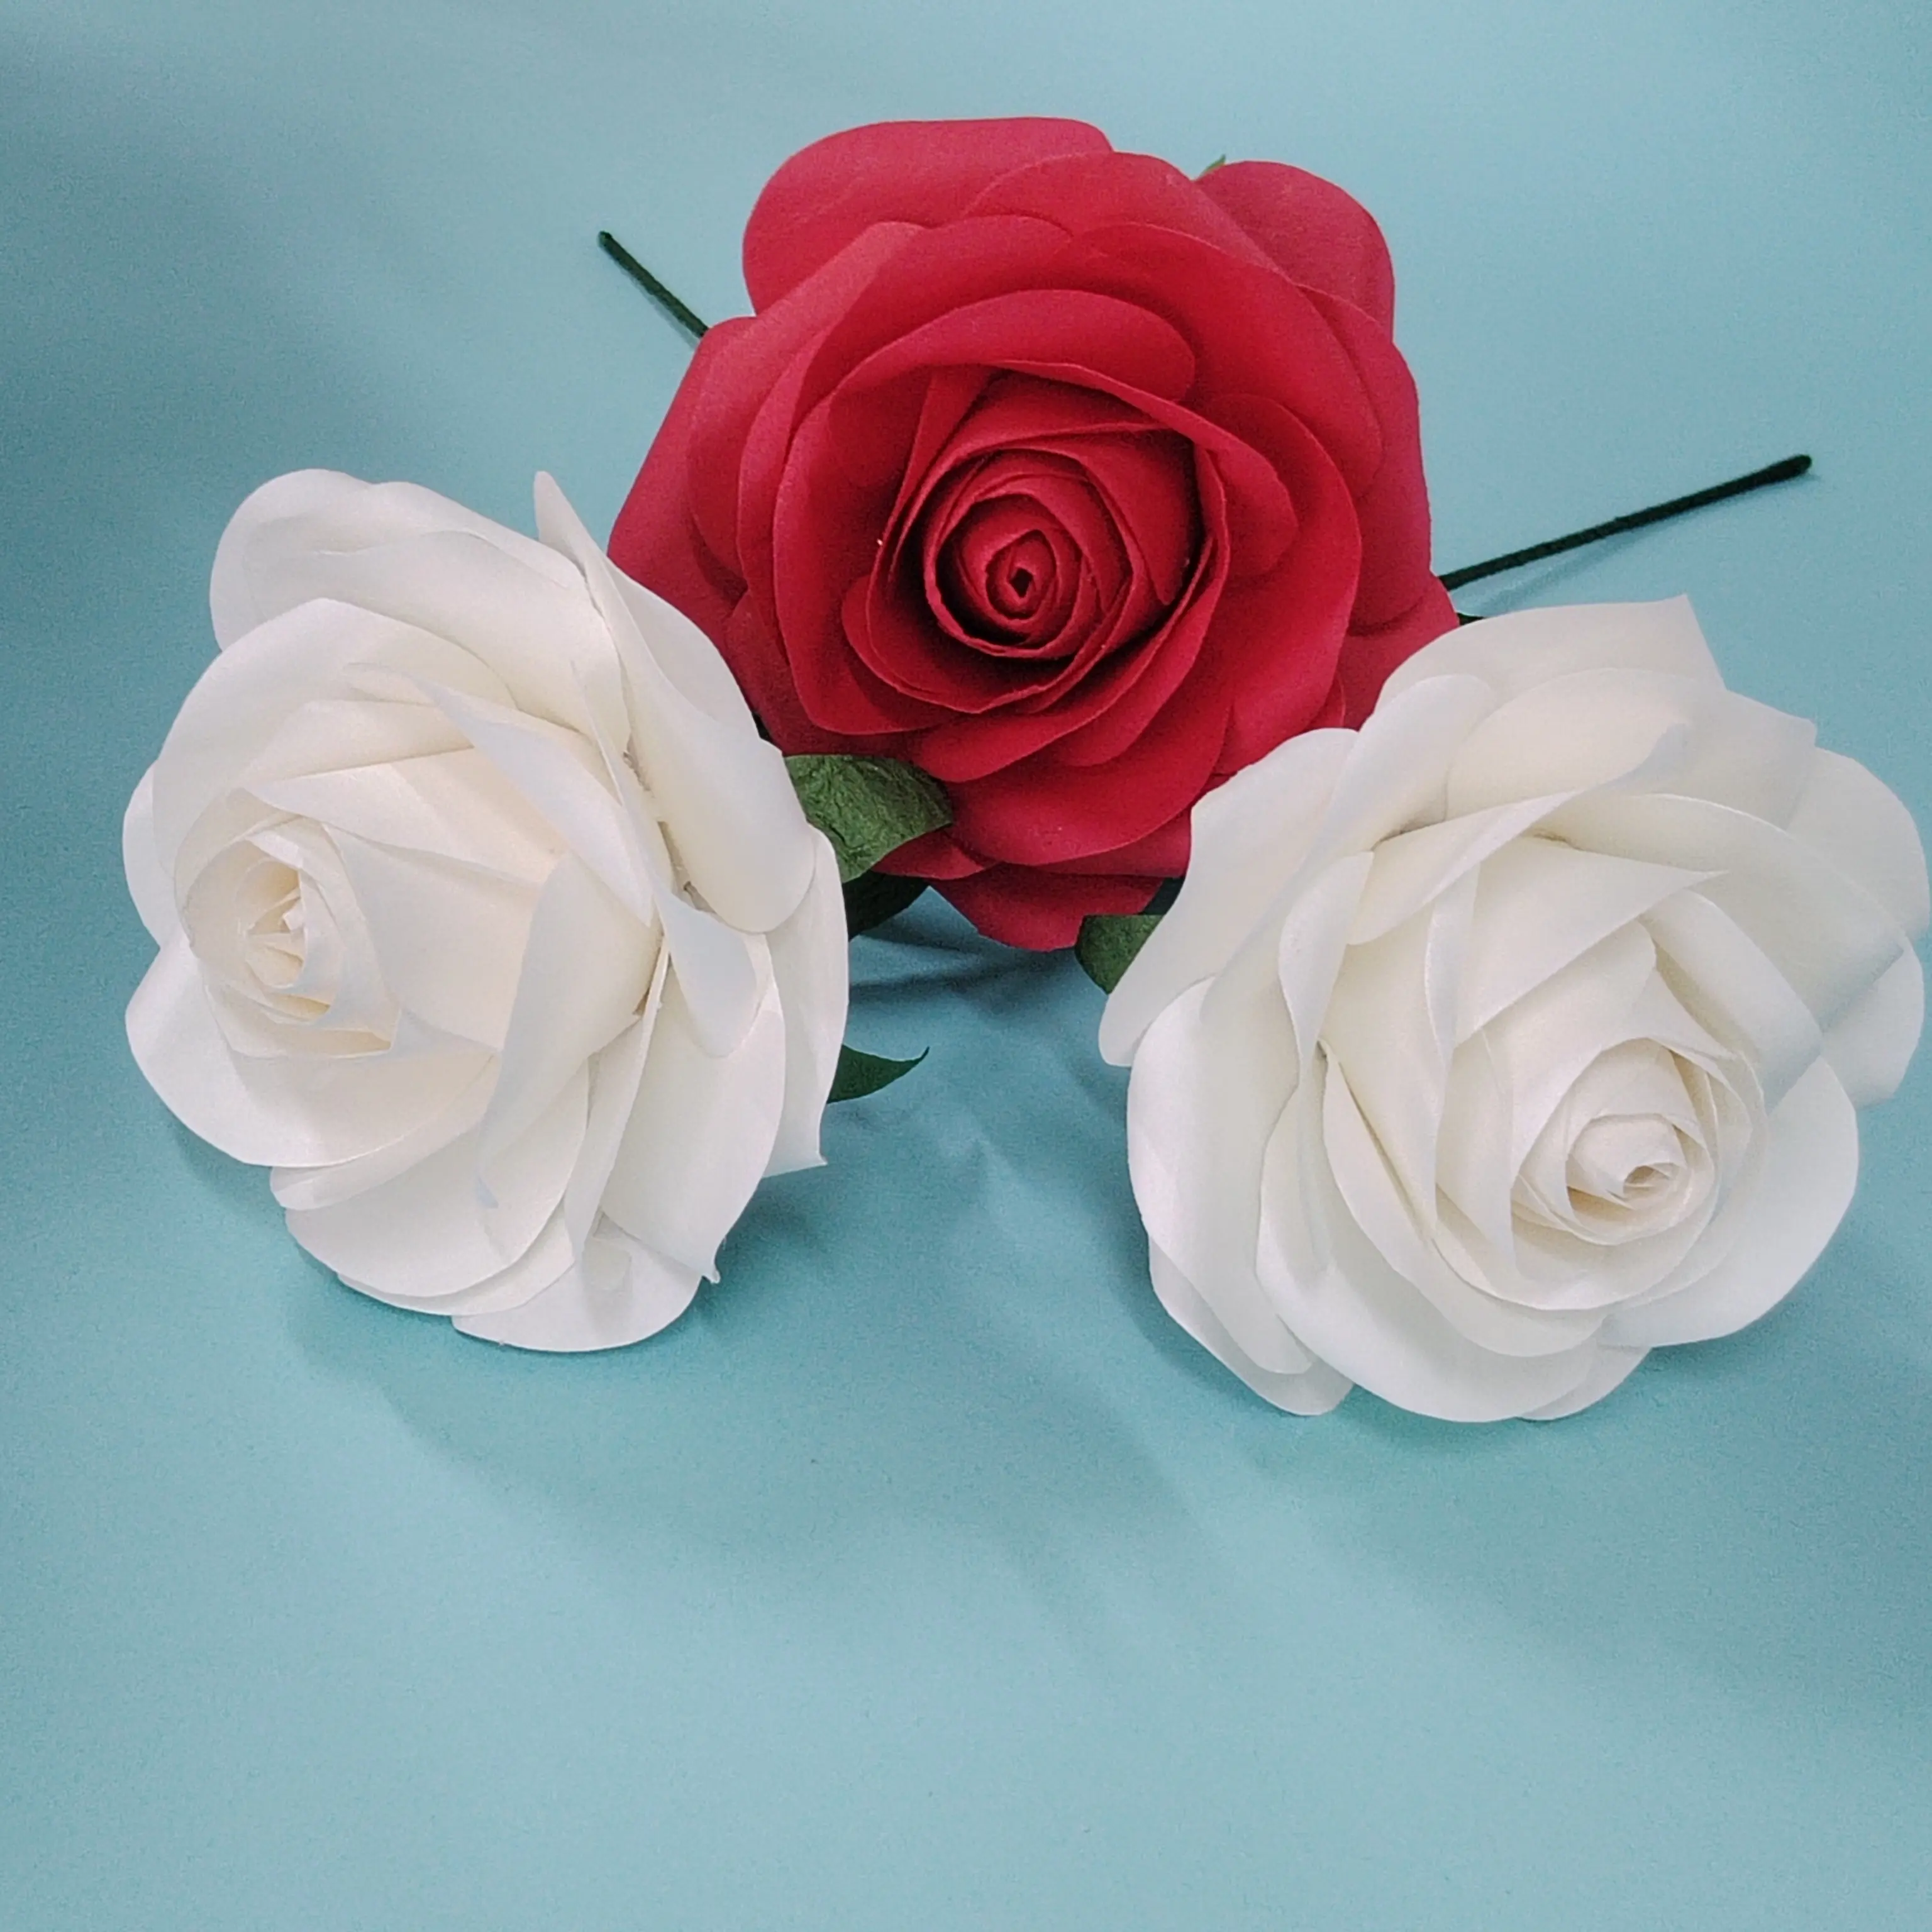 Фабрика Китая, хорошее качество, дешевые бумажные цветы, настоящая розовая голова, красная роза, свадебные украшения, оптовая продажа, бумажные цветы